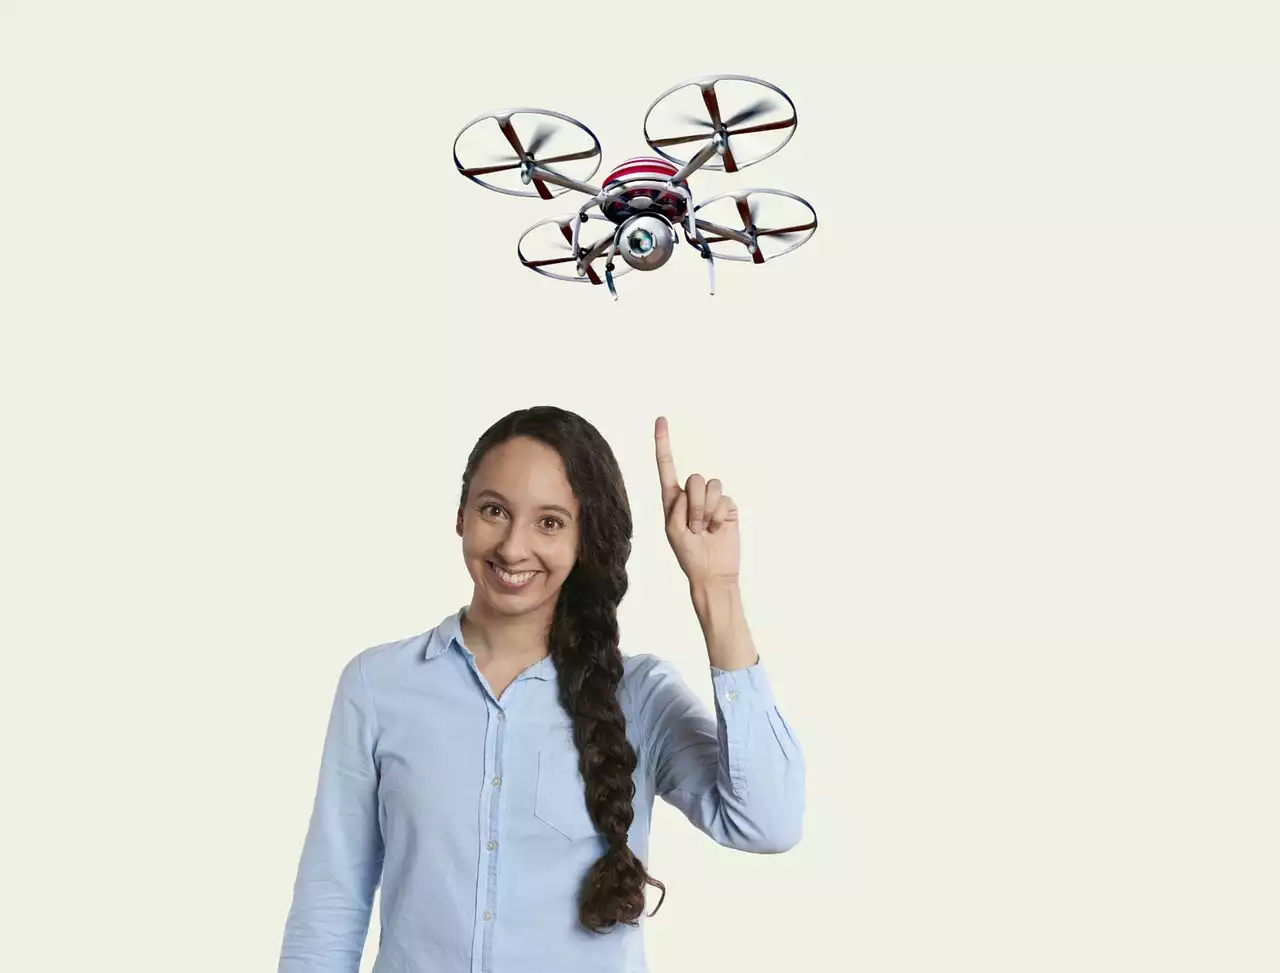 Die vier Bedienelemente einer Drohne